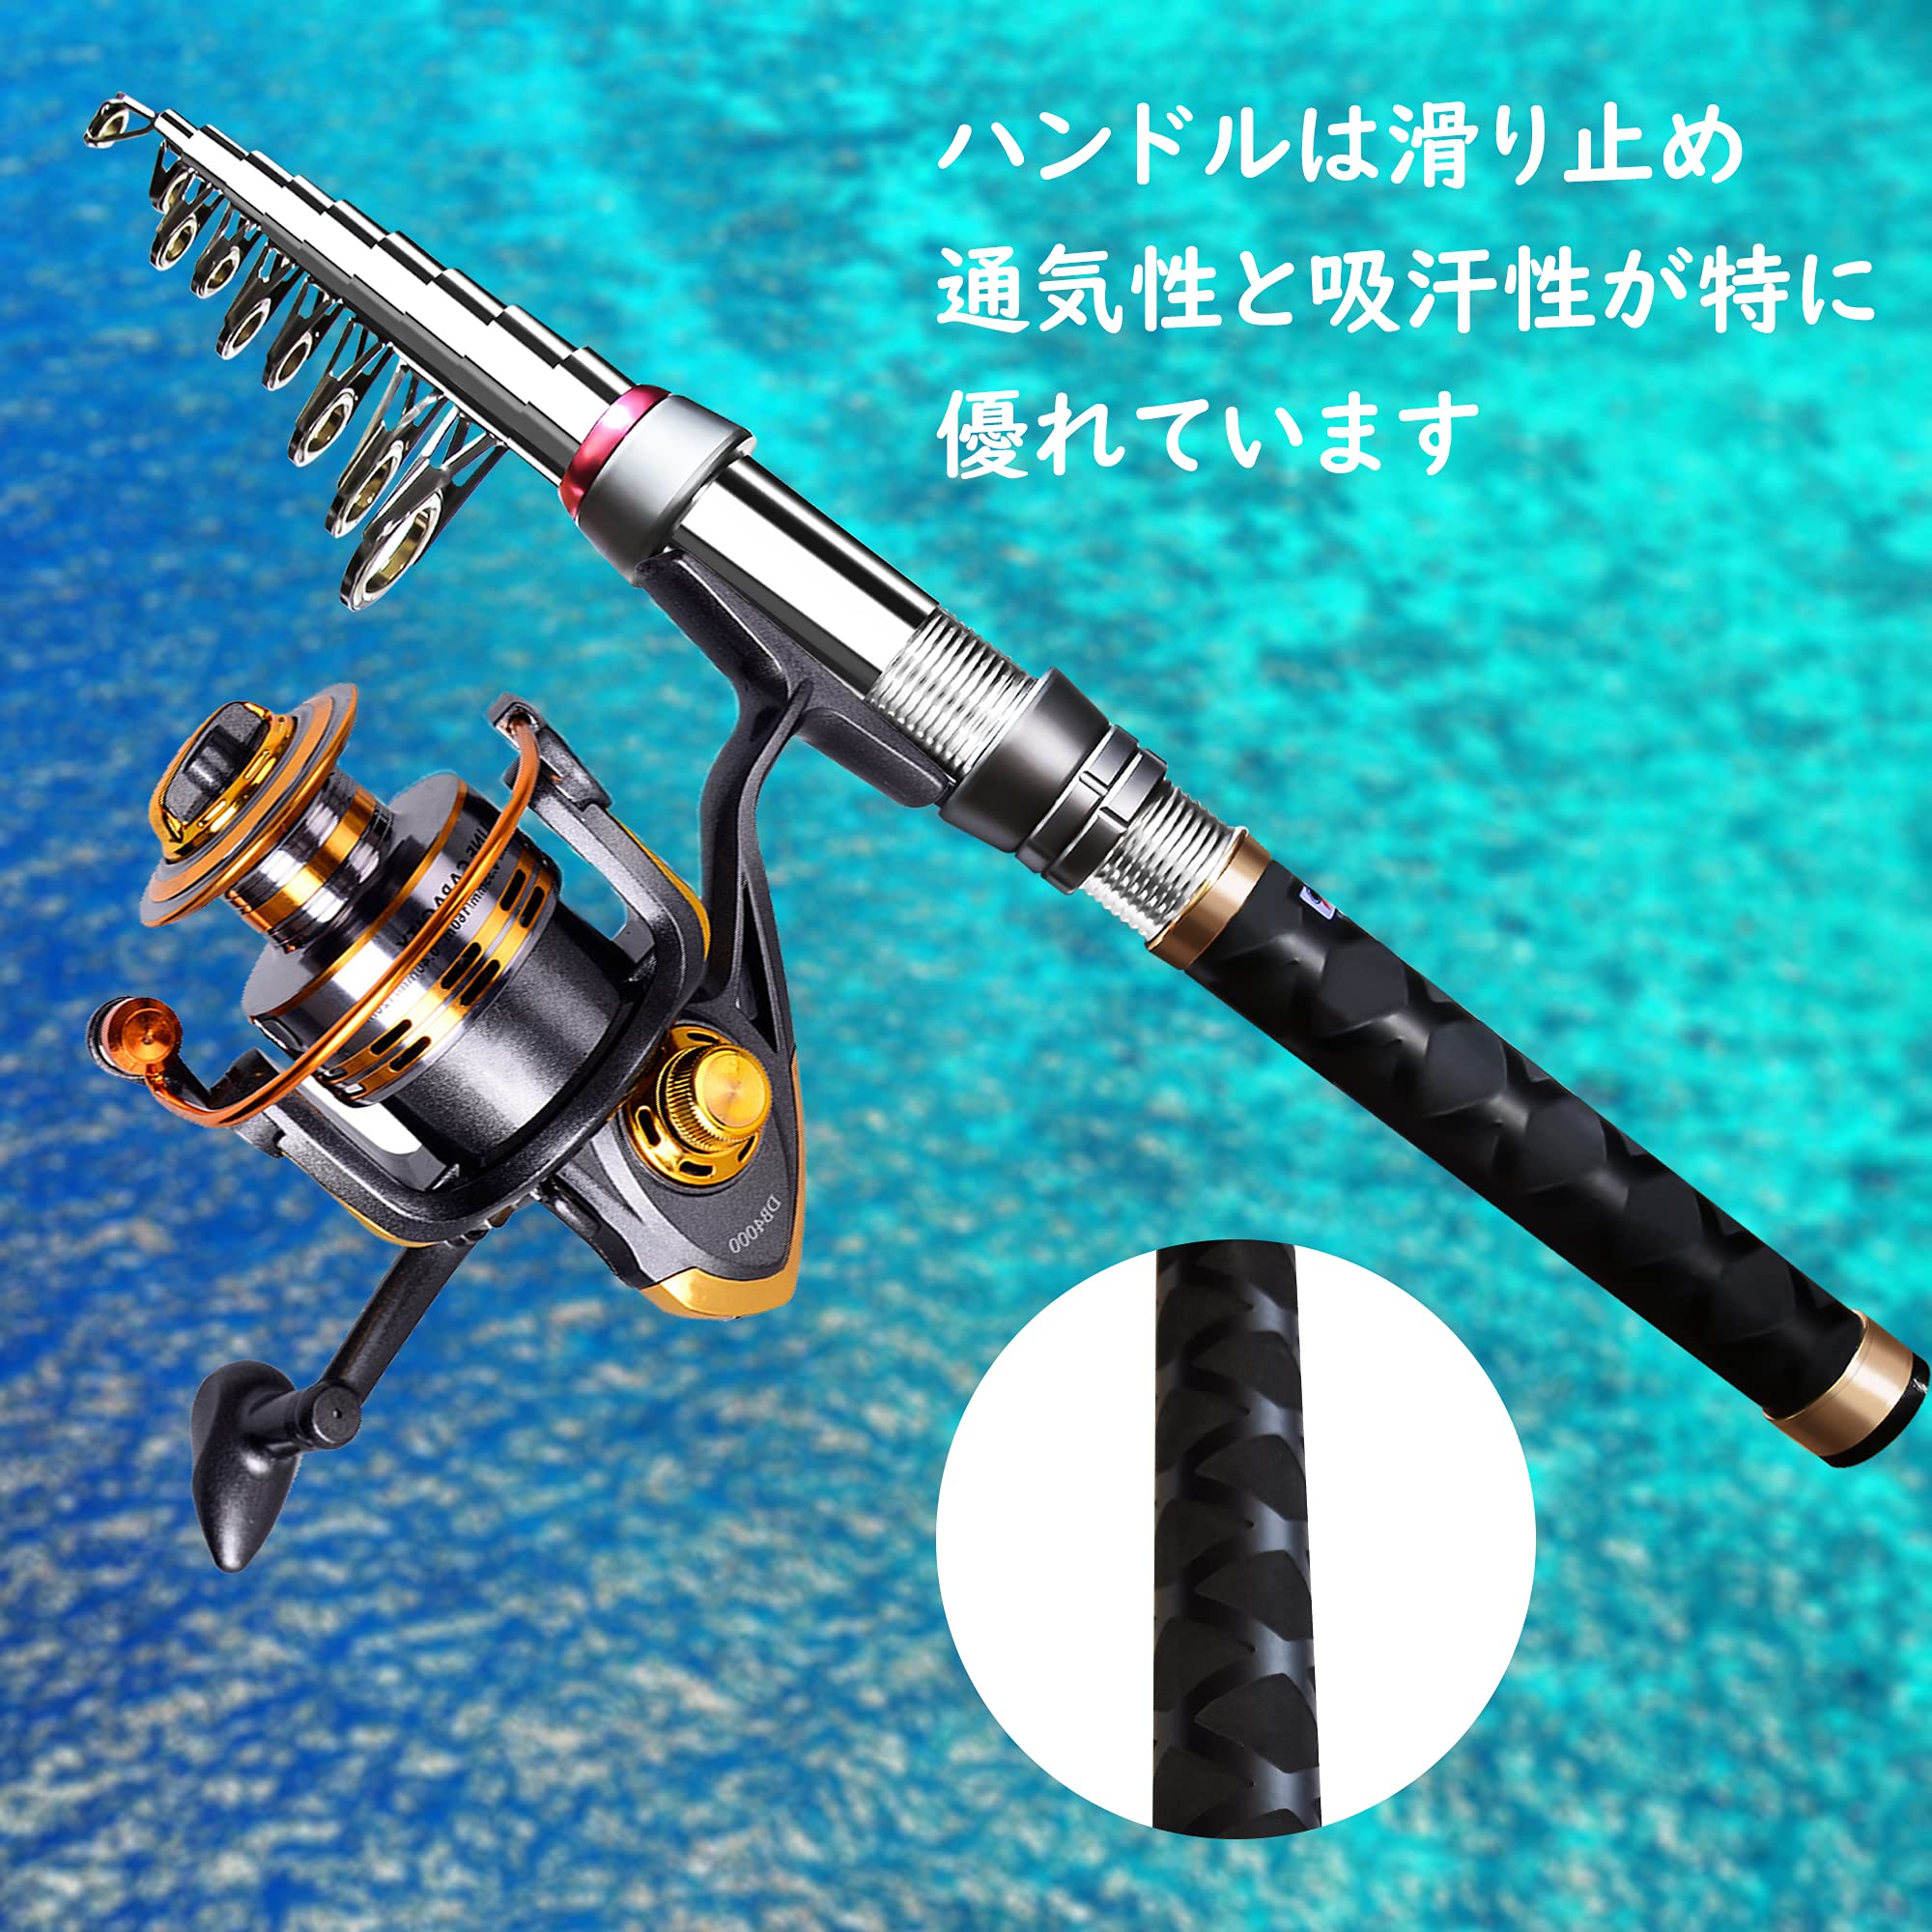 YU67 ロッド コンパクト 釣り竿 投げ竿 釣竿 炭素繊維 伸縮式 3.9m